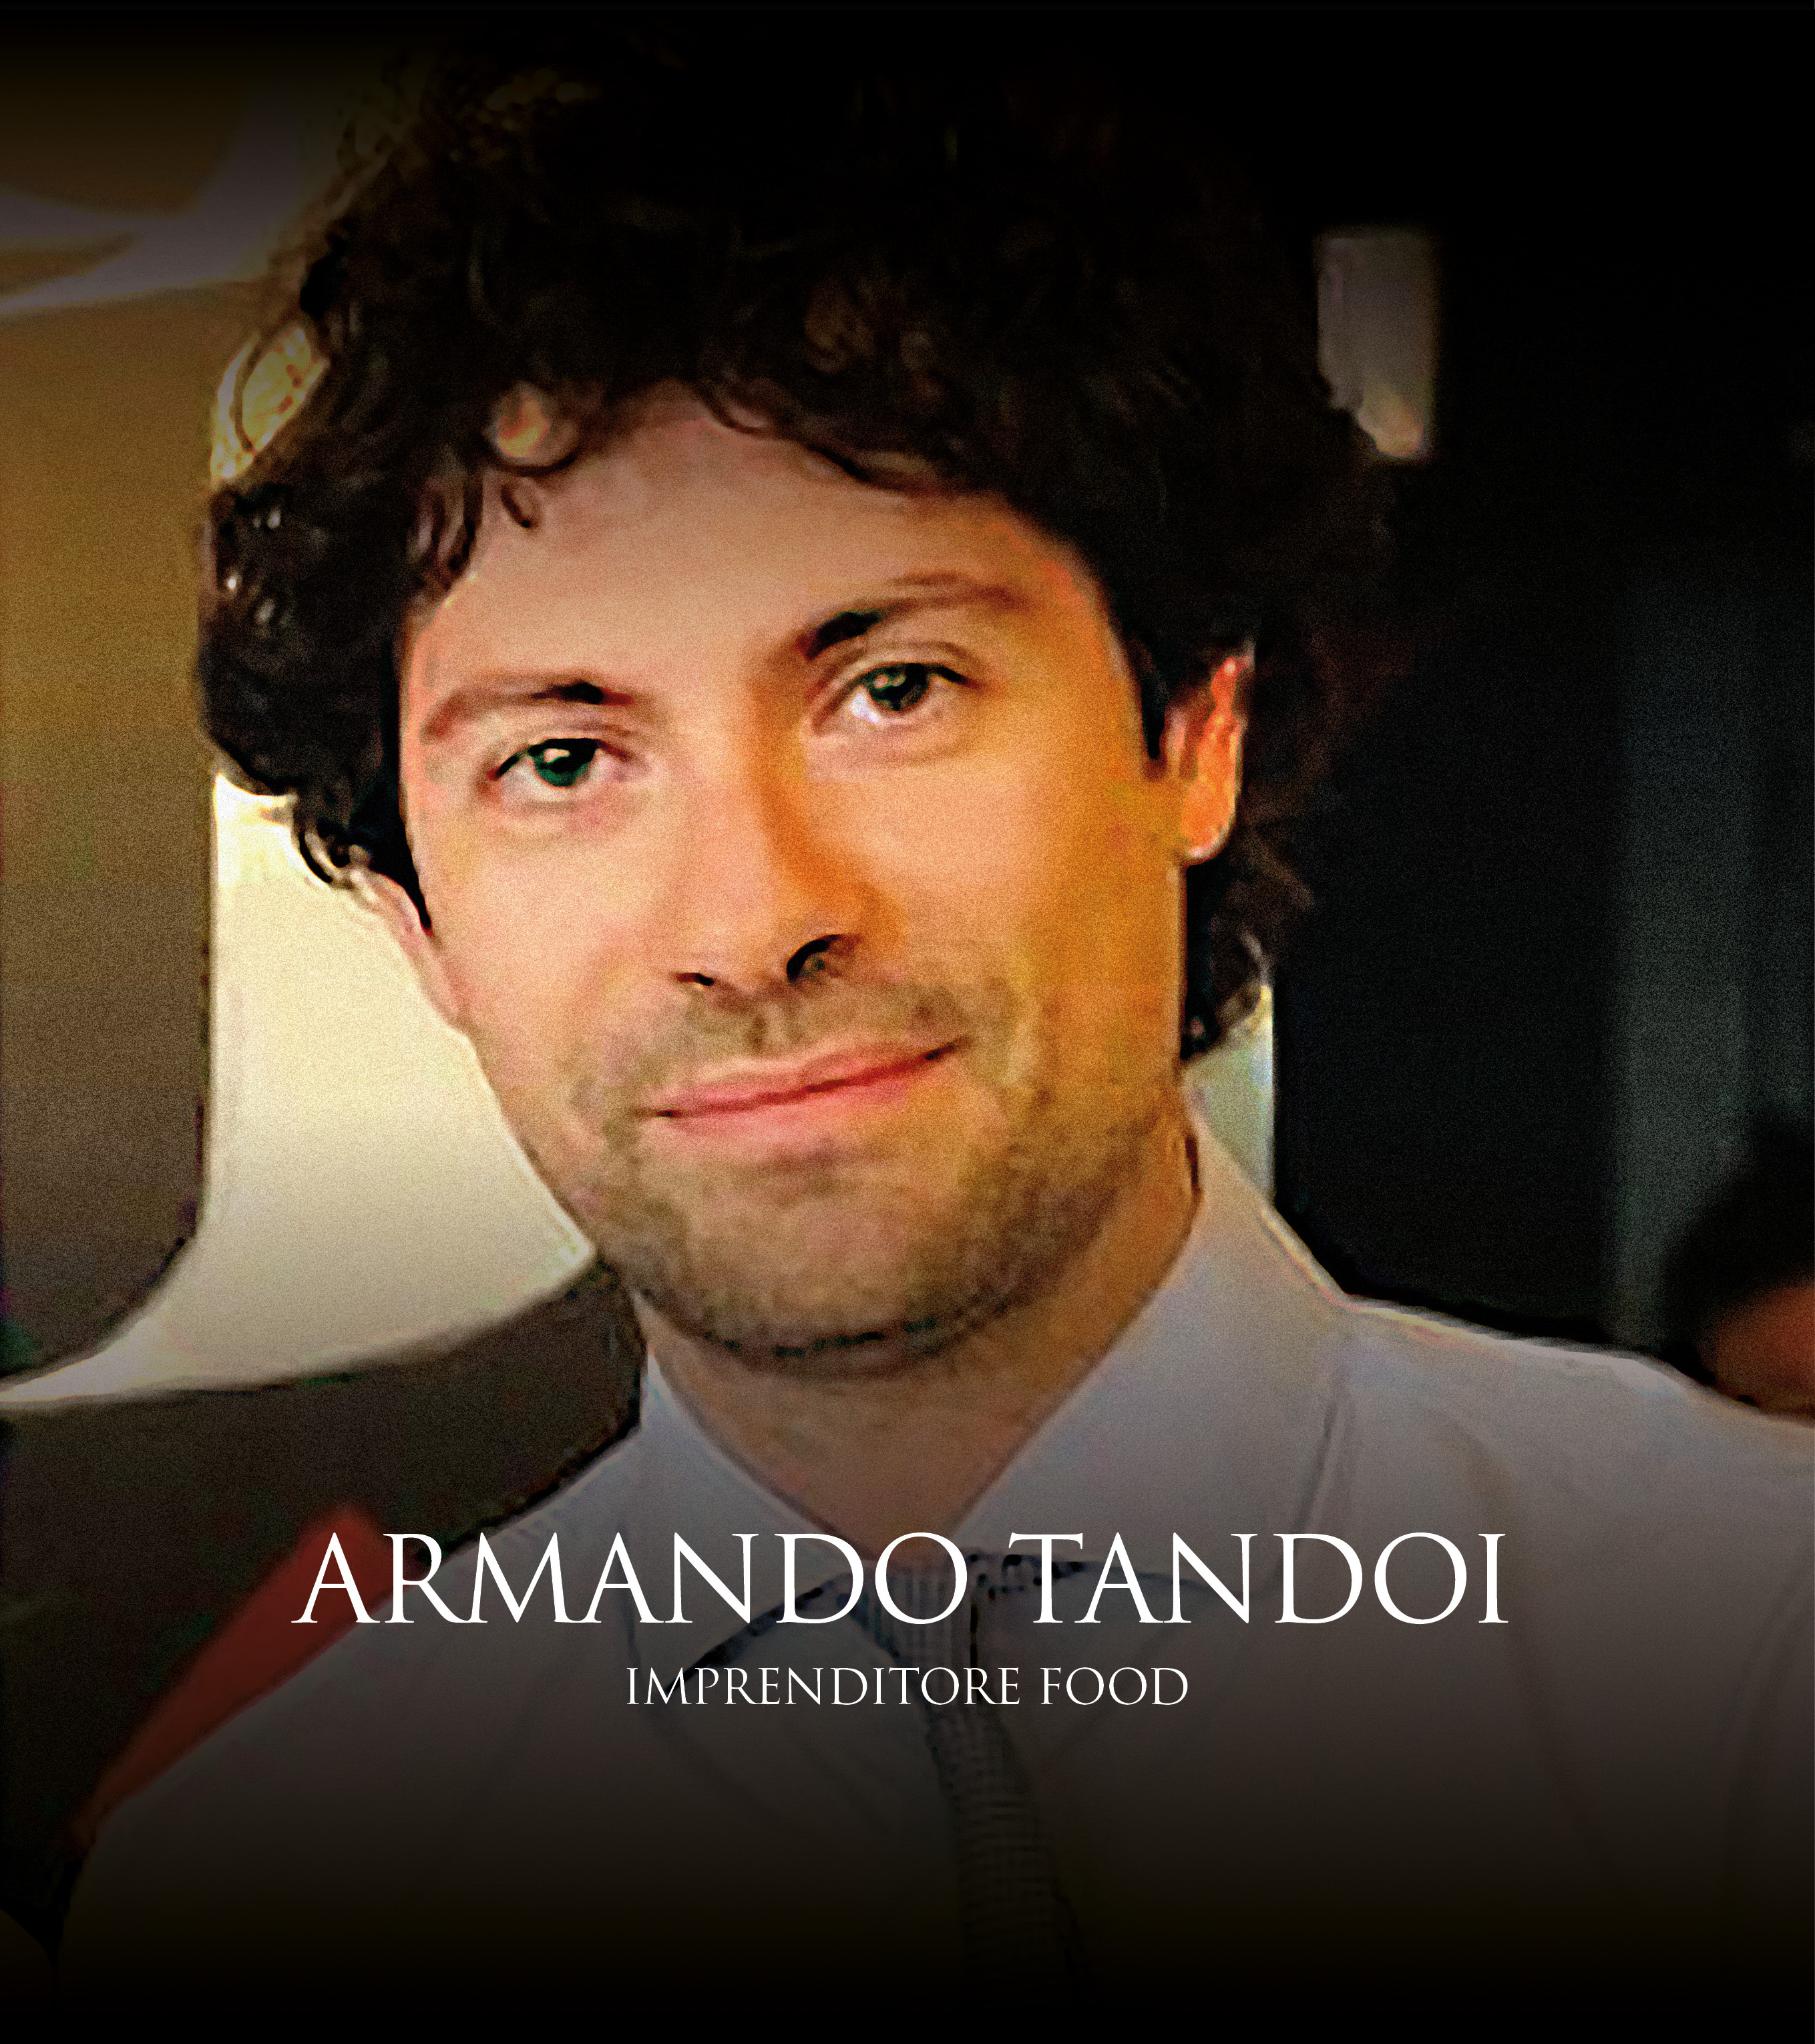 Antonio Tandoi